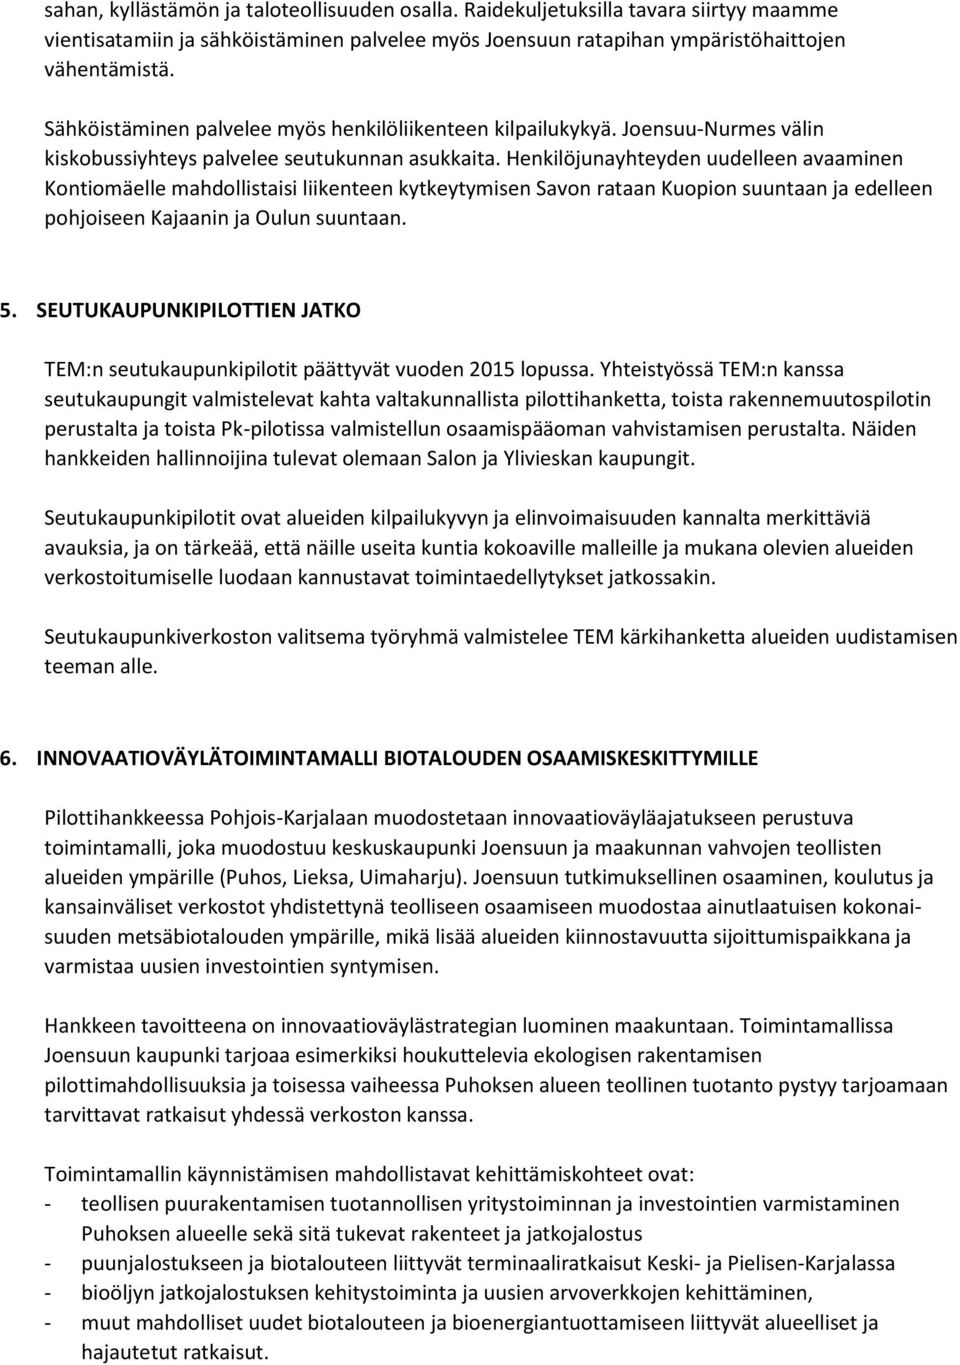 Henkilöjunayhteyden uudelleen avaaminen Kontiomäelle mahdollistaisi liikenteen kytkeytymisen Savon rataan Kuopion suuntaan ja edelleen pohjoiseen Kajaanin ja Oulun suuntaan. 5.